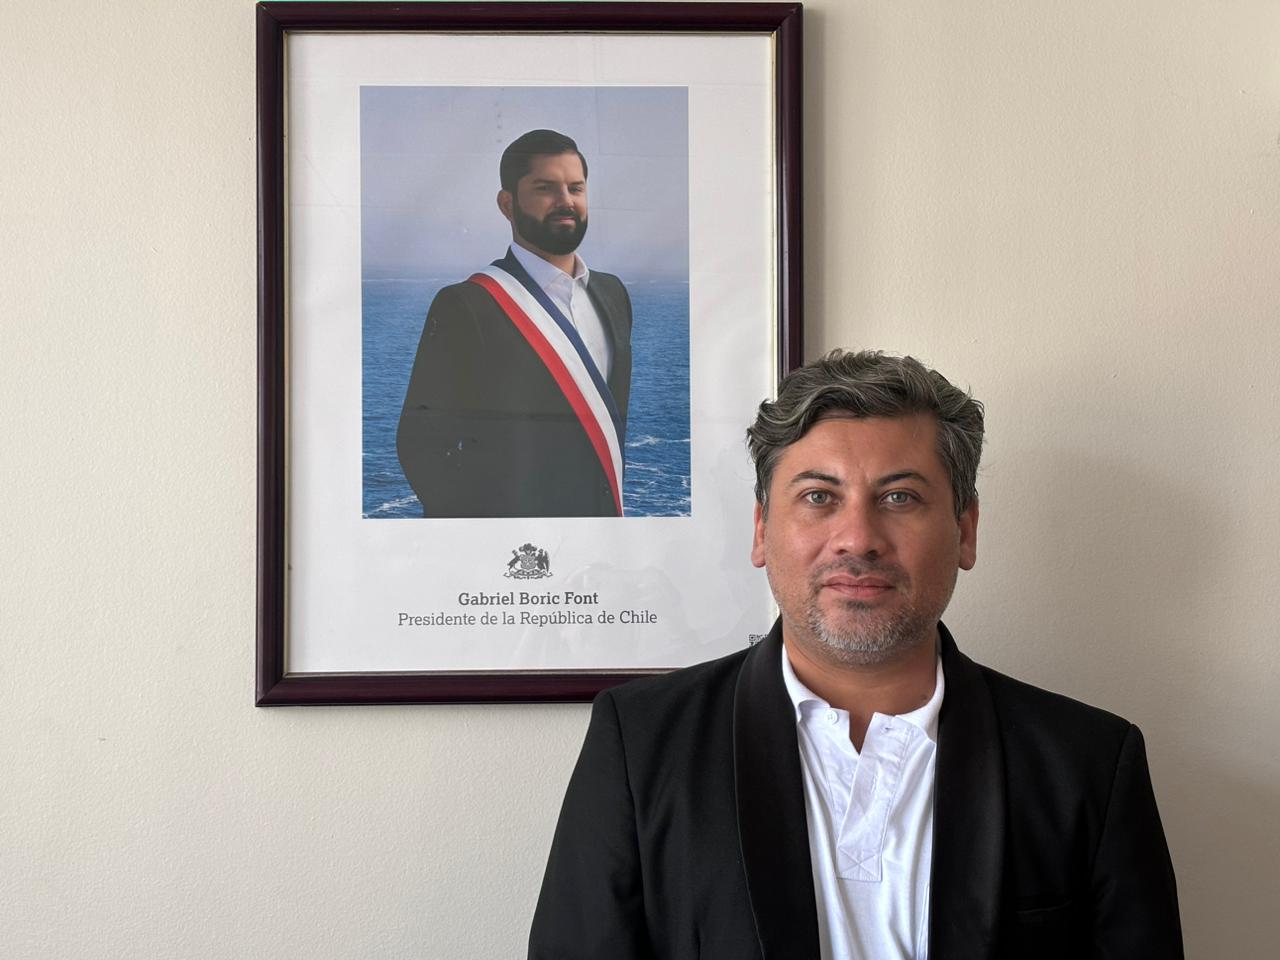 Pedro Antonio Medalla Salinas asumió como Secretario Regional Ministerial en la región de Tarapac